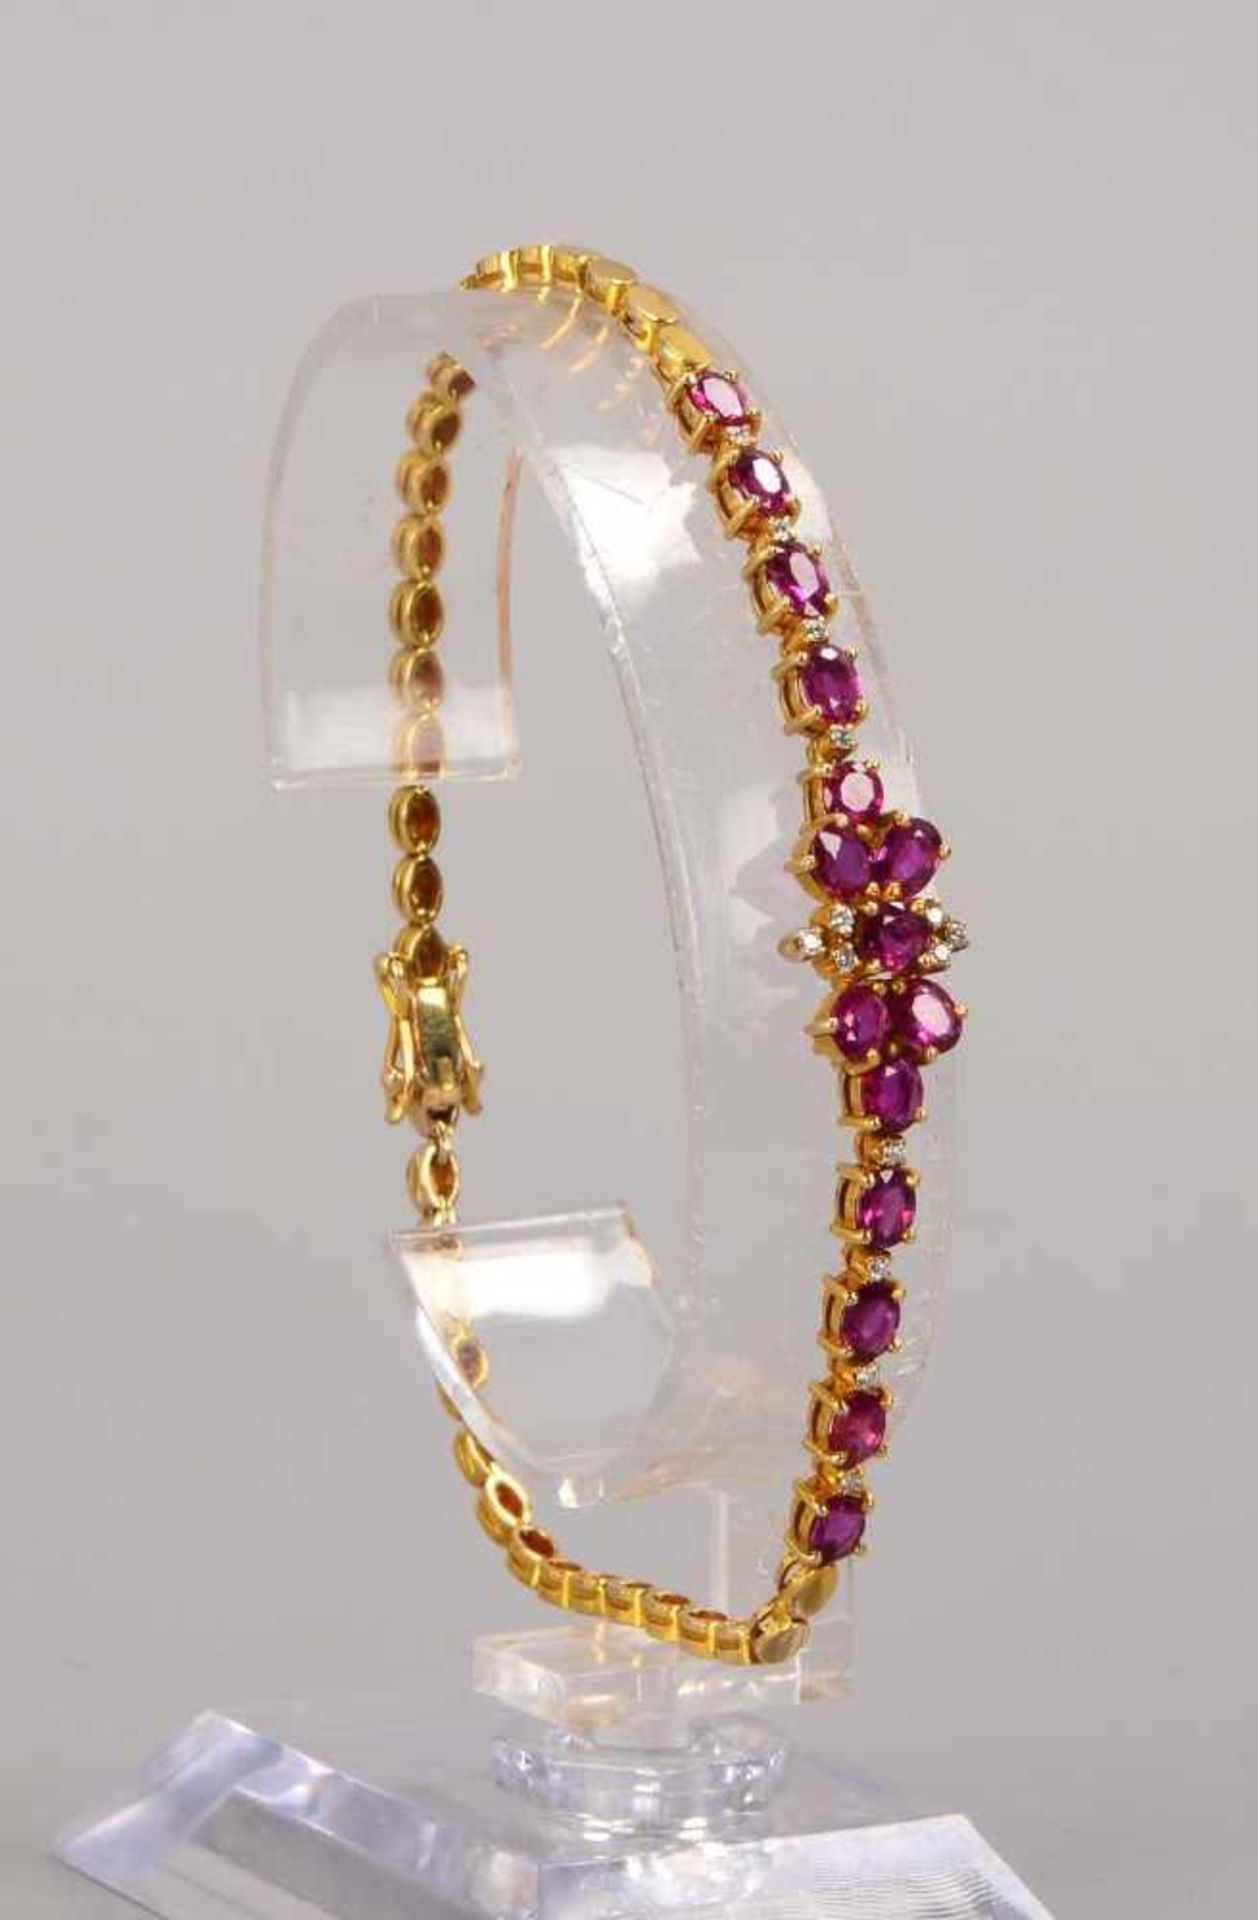 Armband, 585 GG, mit 15-fachem Rubinbesatz und 14x kleinen Diamanten; Länge 19,5 cm, Gewicht 9,47 g